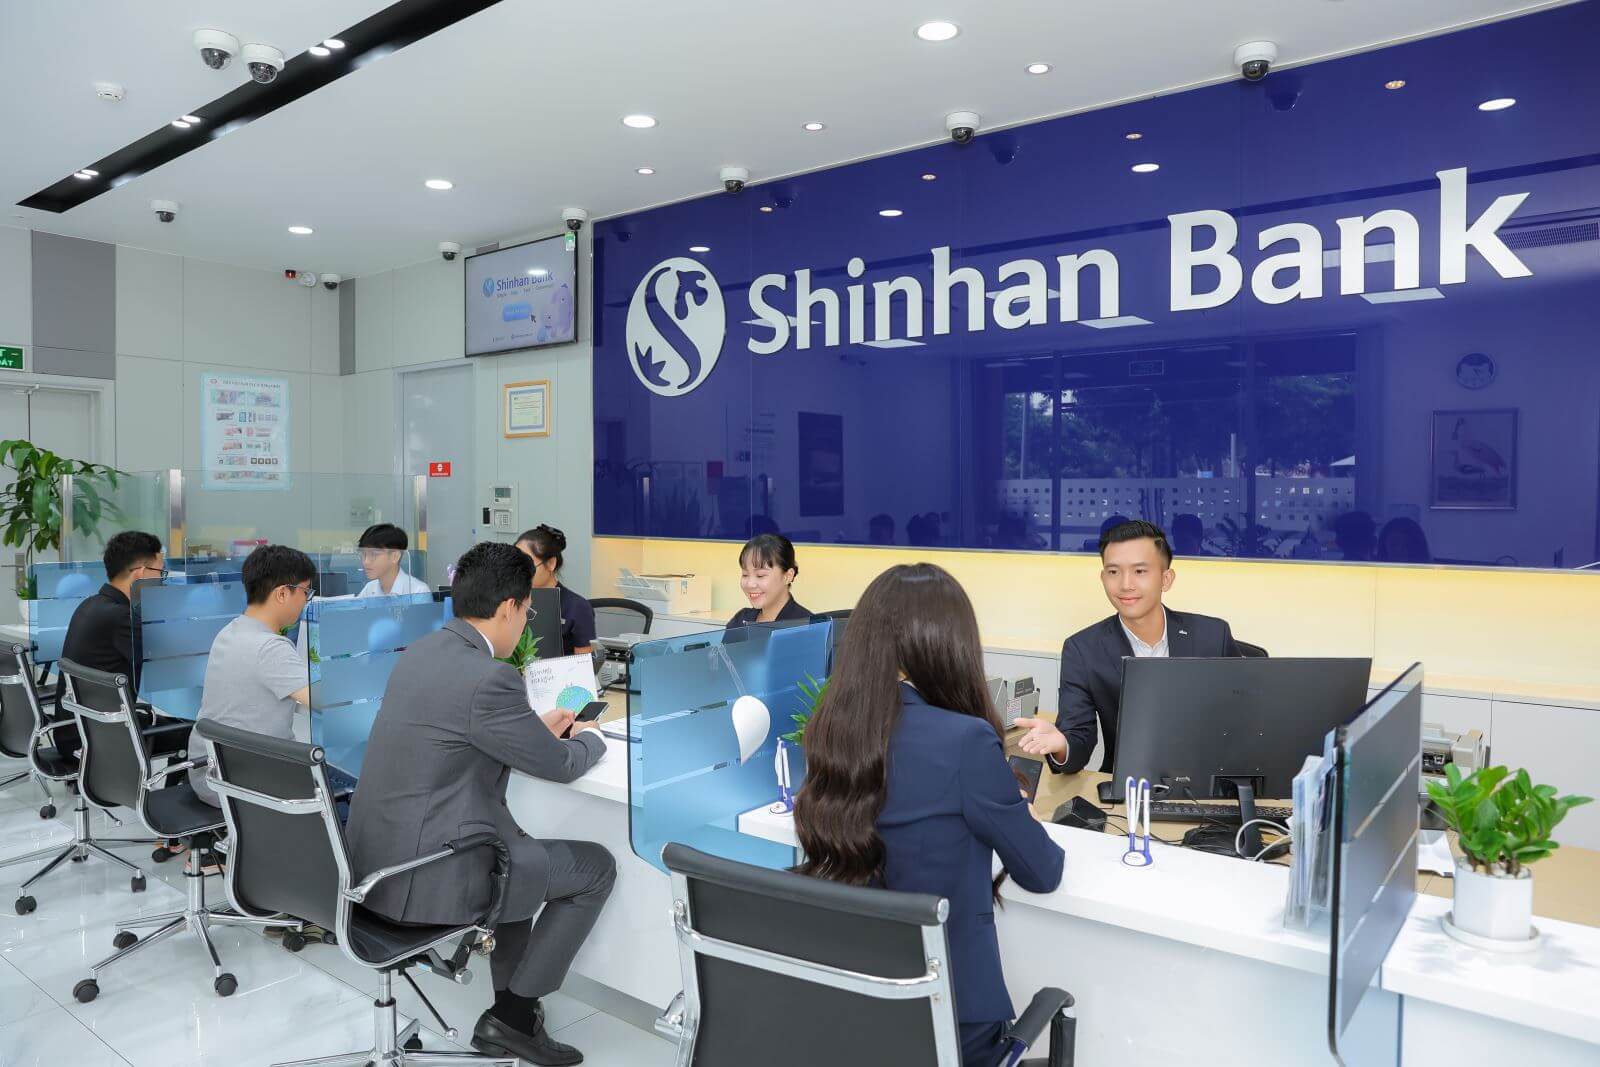 Lịch làm việc ngân hàng Shinhan Bank